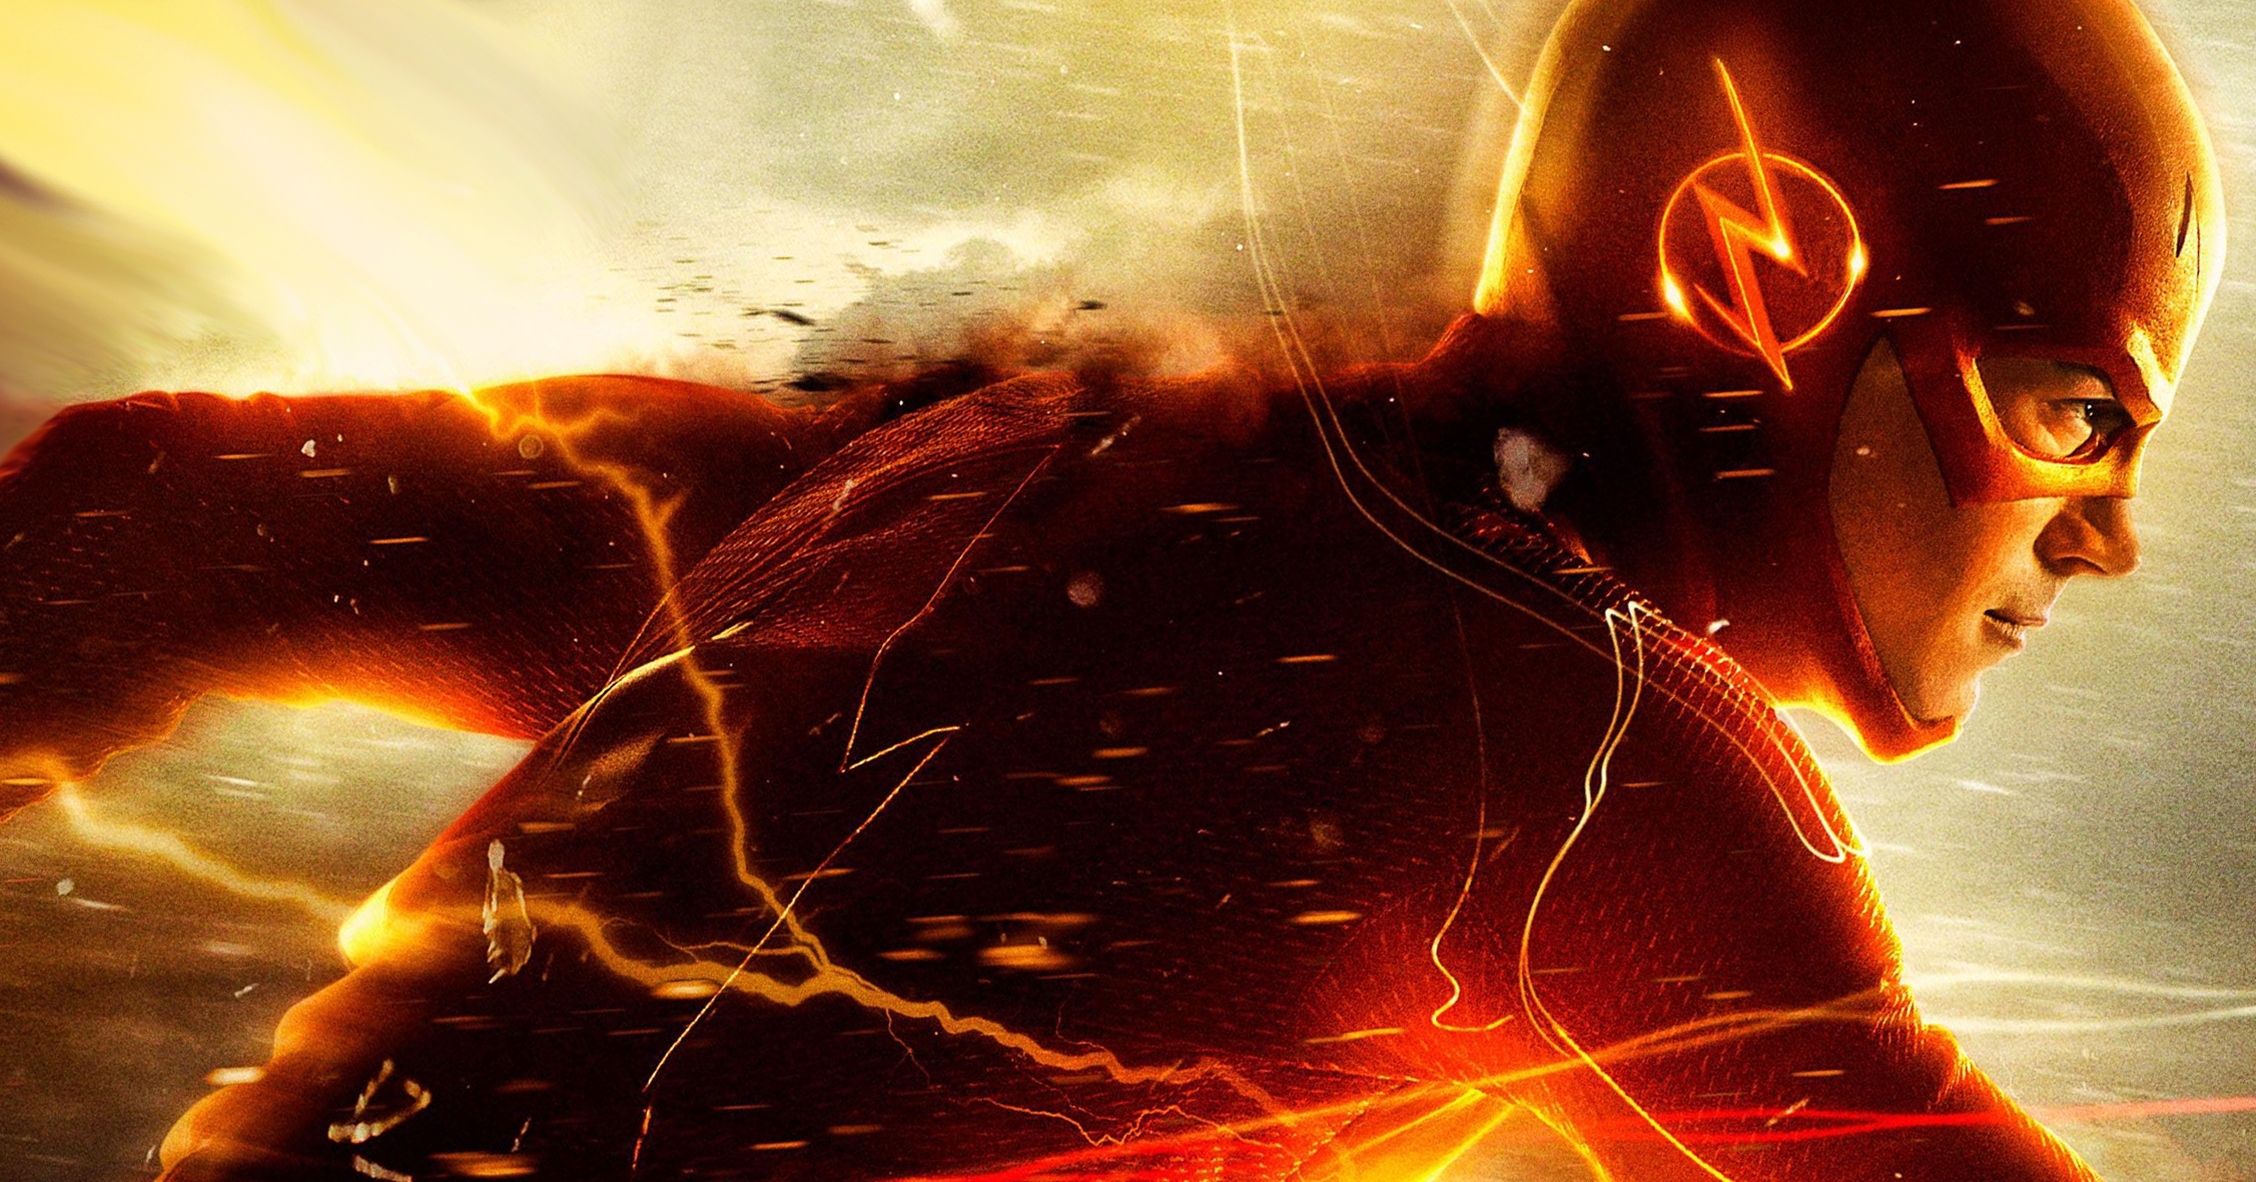 Wallpaper The Flash Barry Allen Dc Ics Series Hero Costume